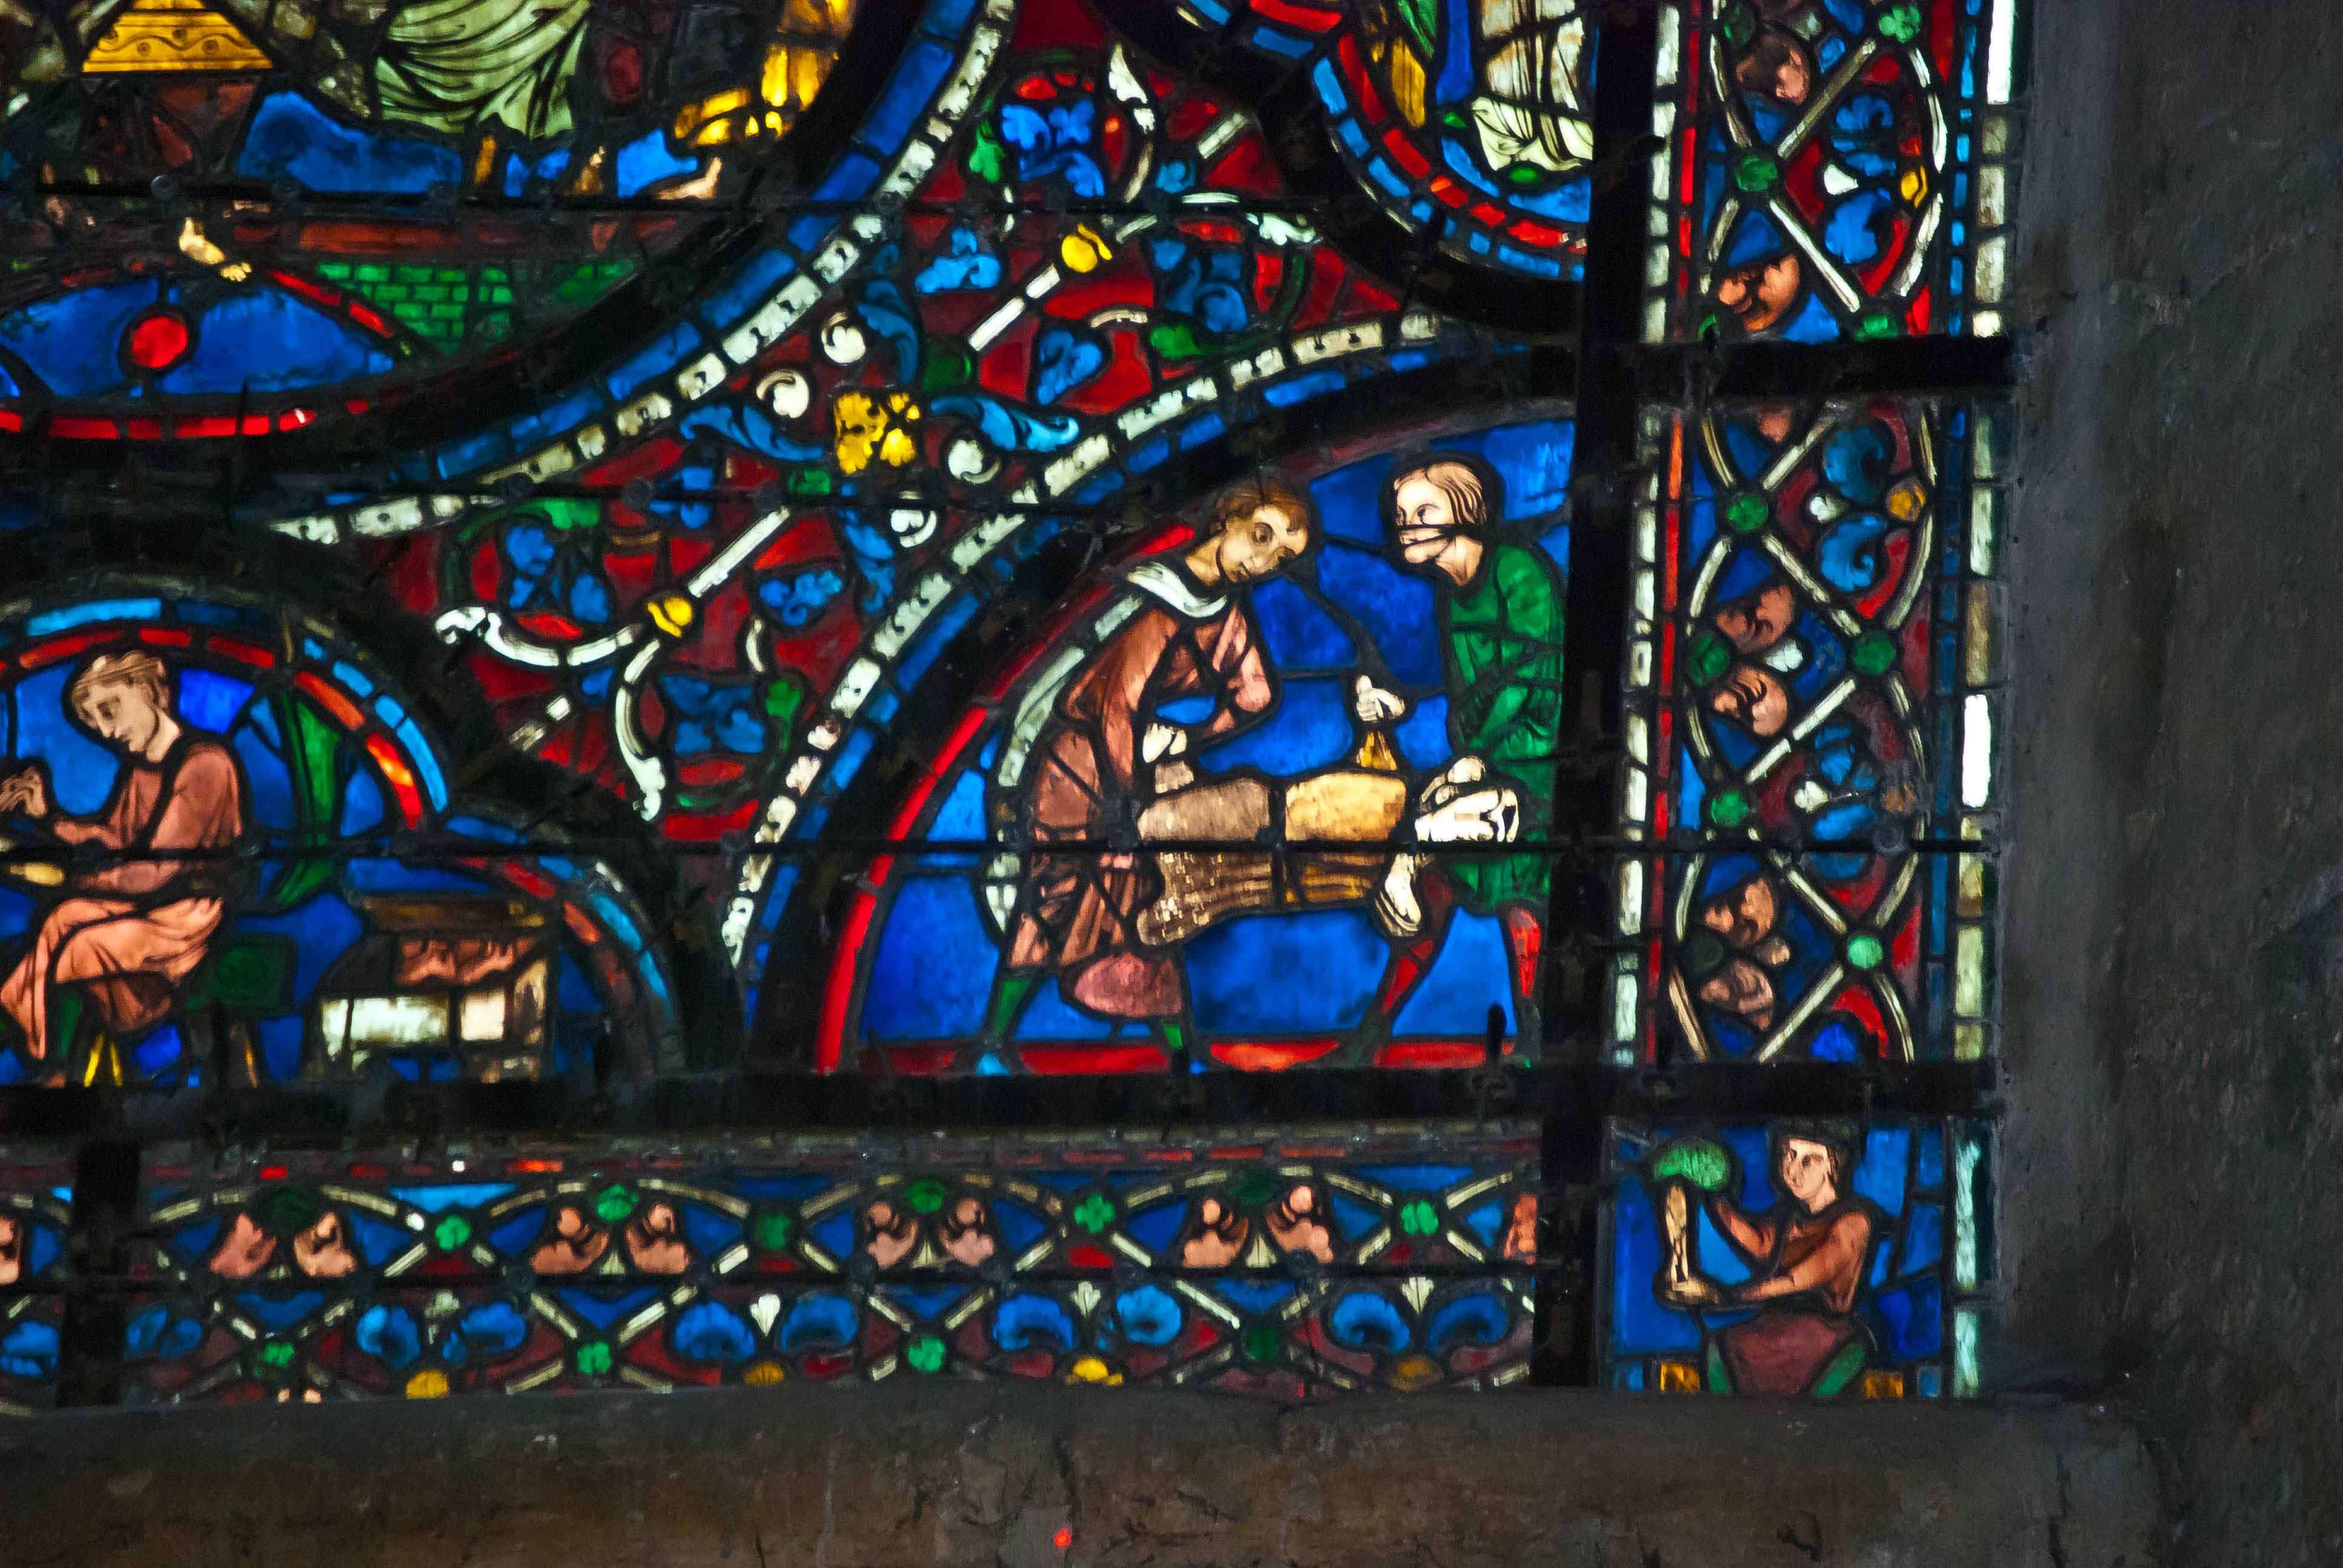 Las vidrieras de la catedral de Chartres - Chartres: Arte, espiritualidad y esoterismo. (1)